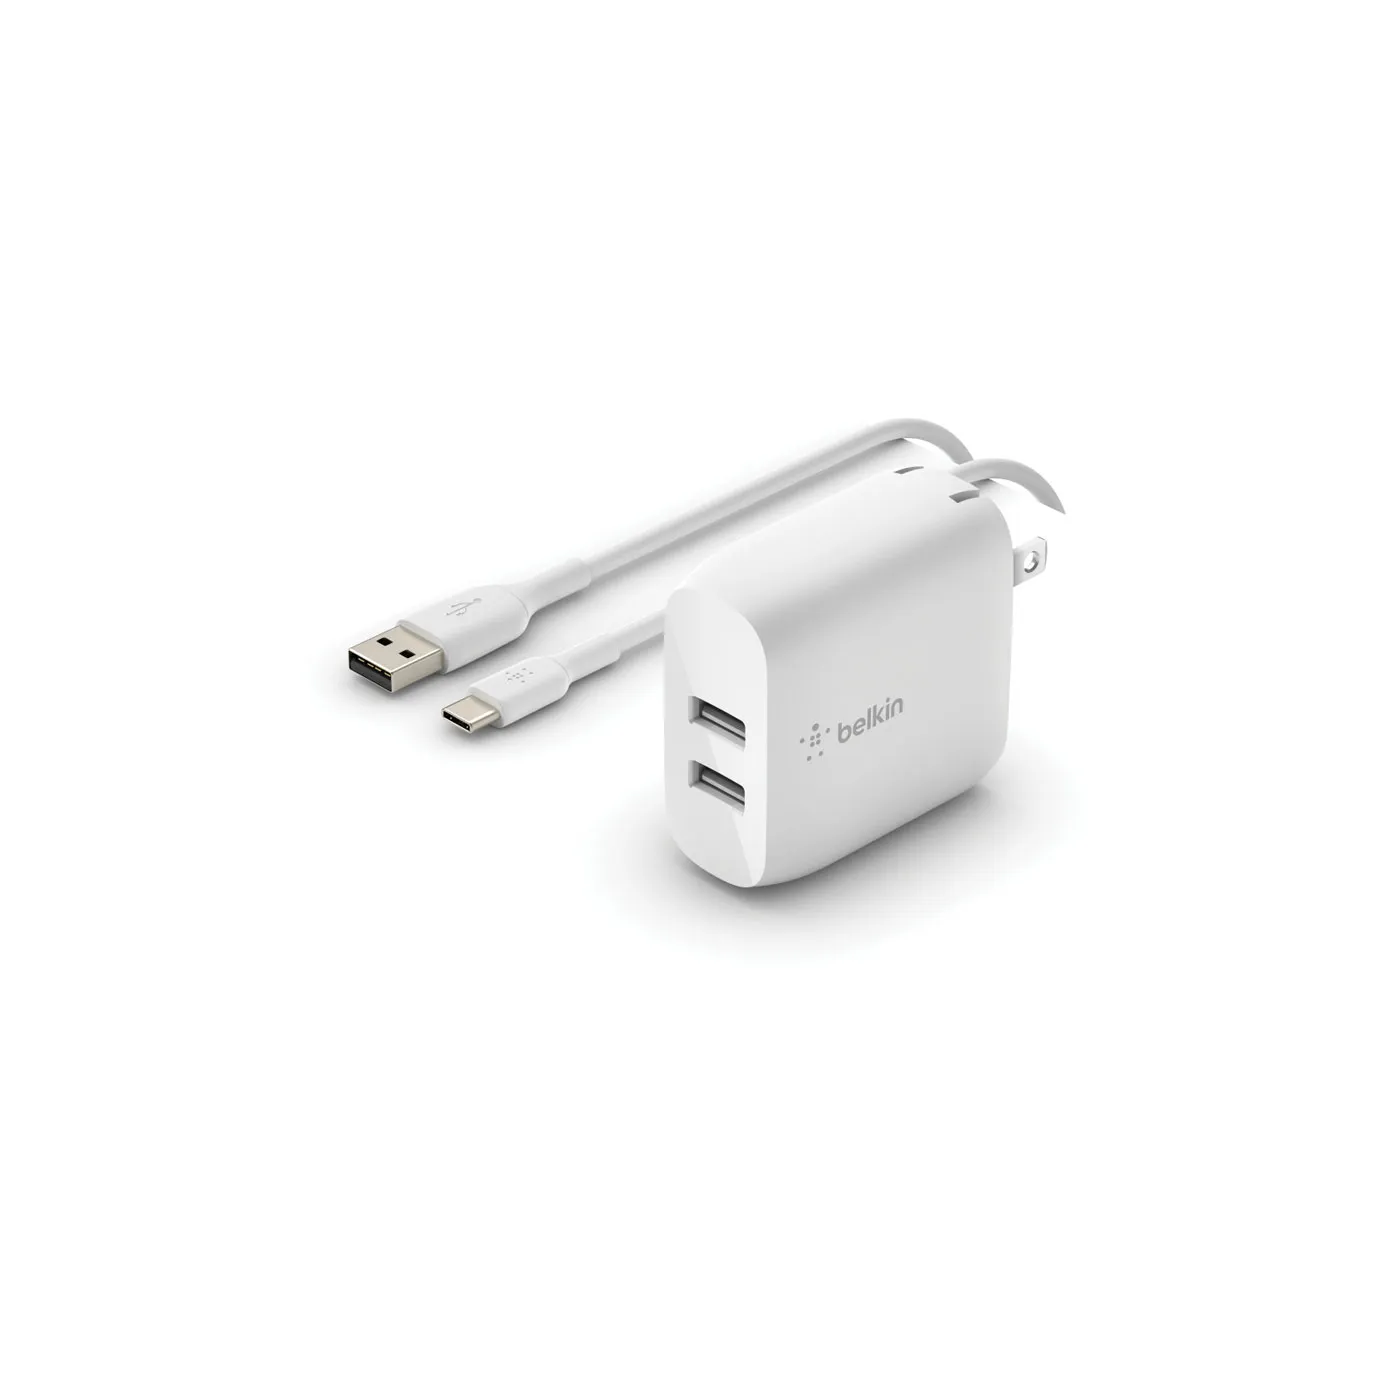 Adaptador|Cargador de Pared BELKIN Dual 24W (12W USB|12W USB) + Cable USB a USBC de 1.0 Metro Blanco